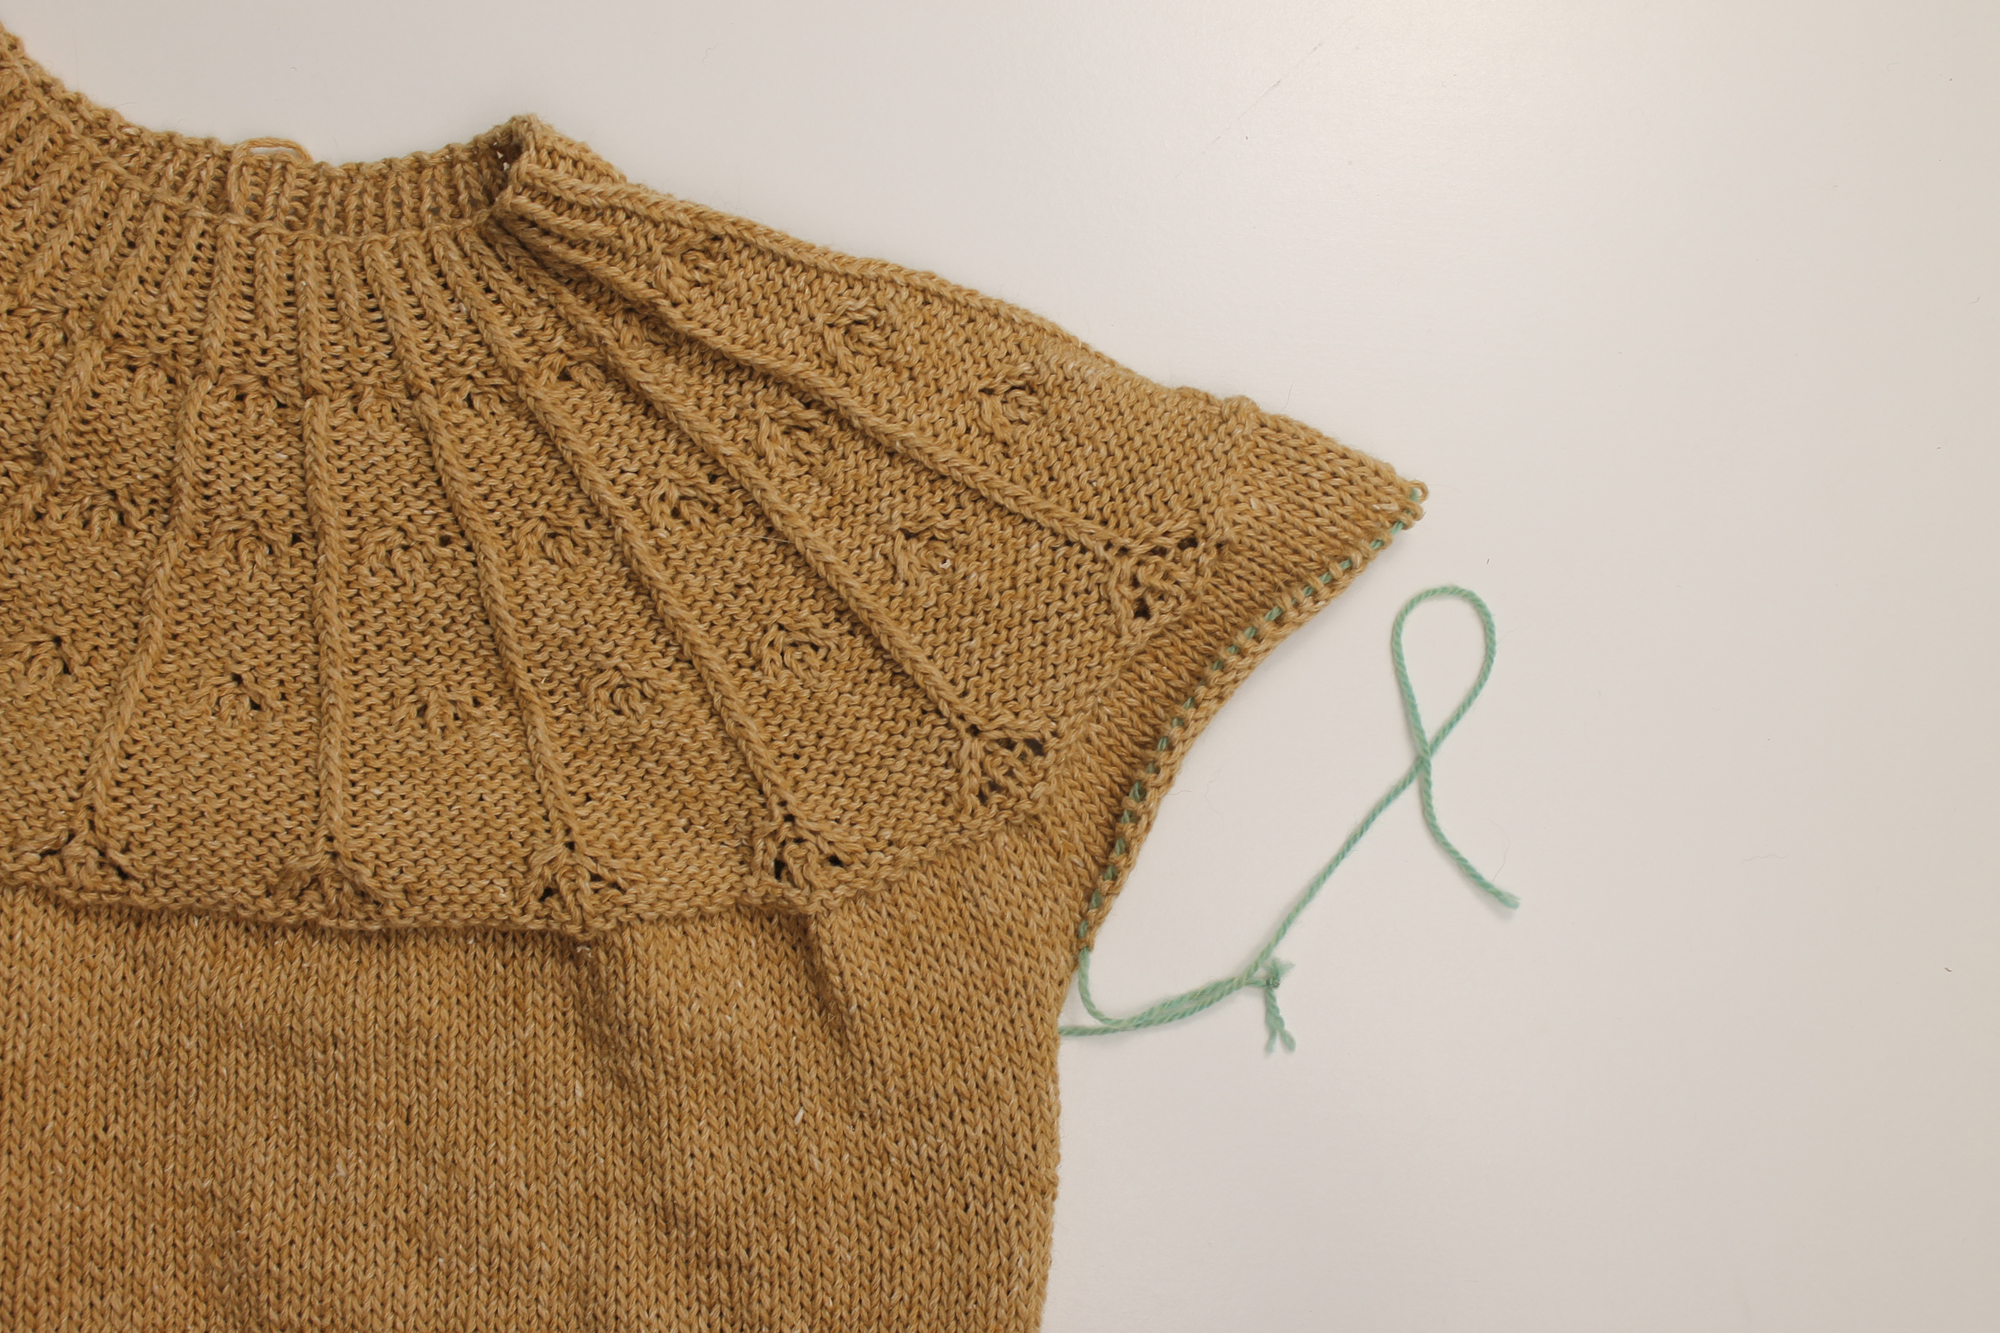 Yarn as a stitch holder